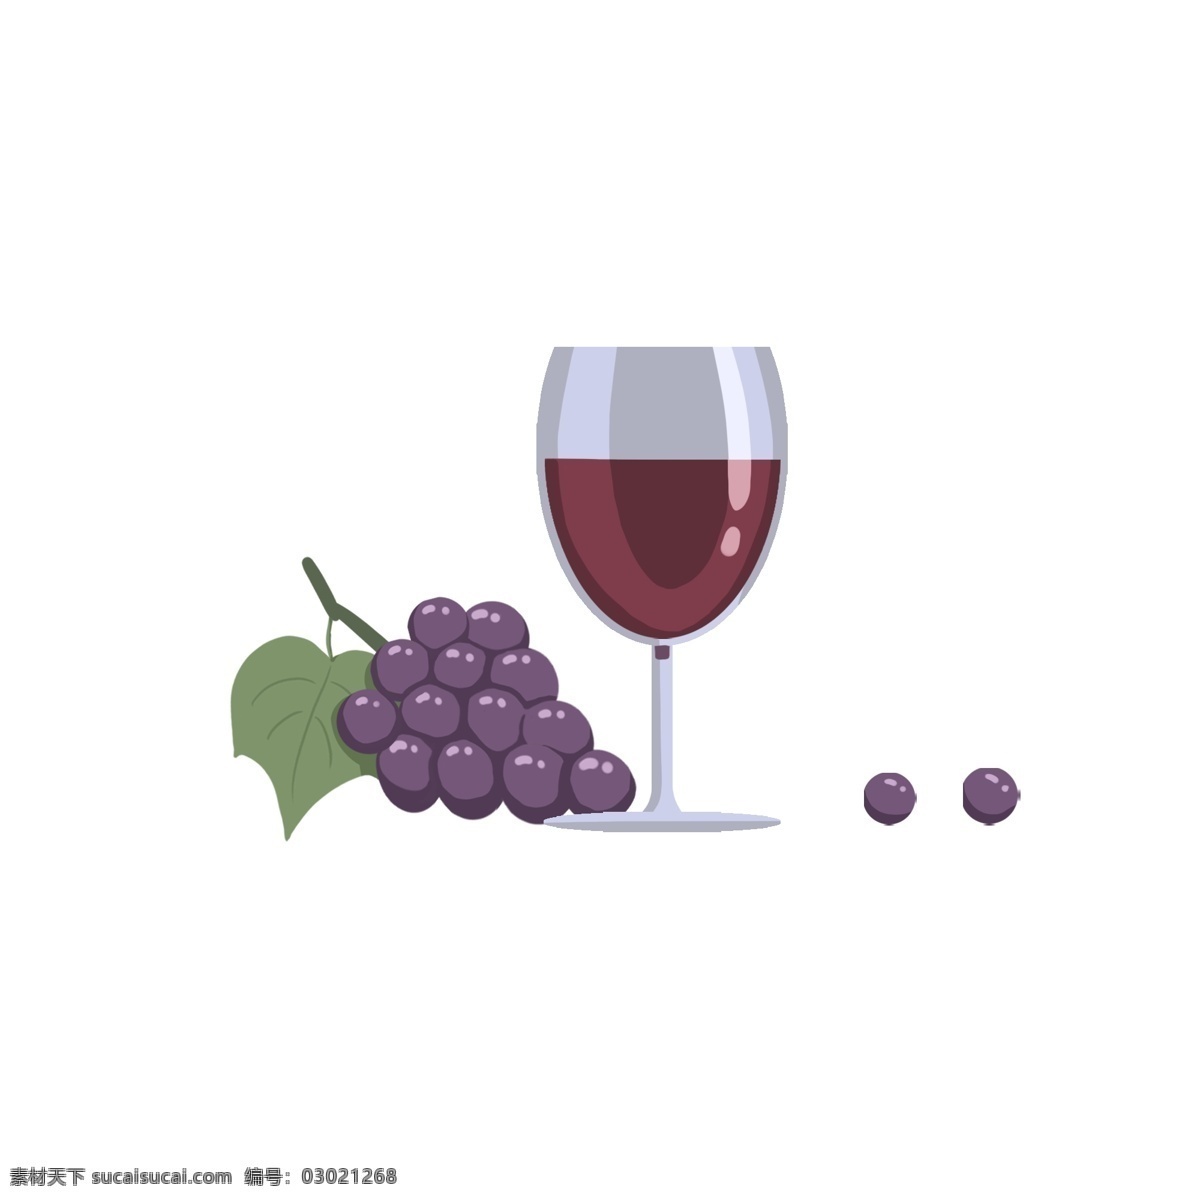 简约 清新 葡萄酒 插画 元素 设计素材 免扣元素 png素材 食品 饮料 酒类 可商用 葡萄 酒杯 装饰图案